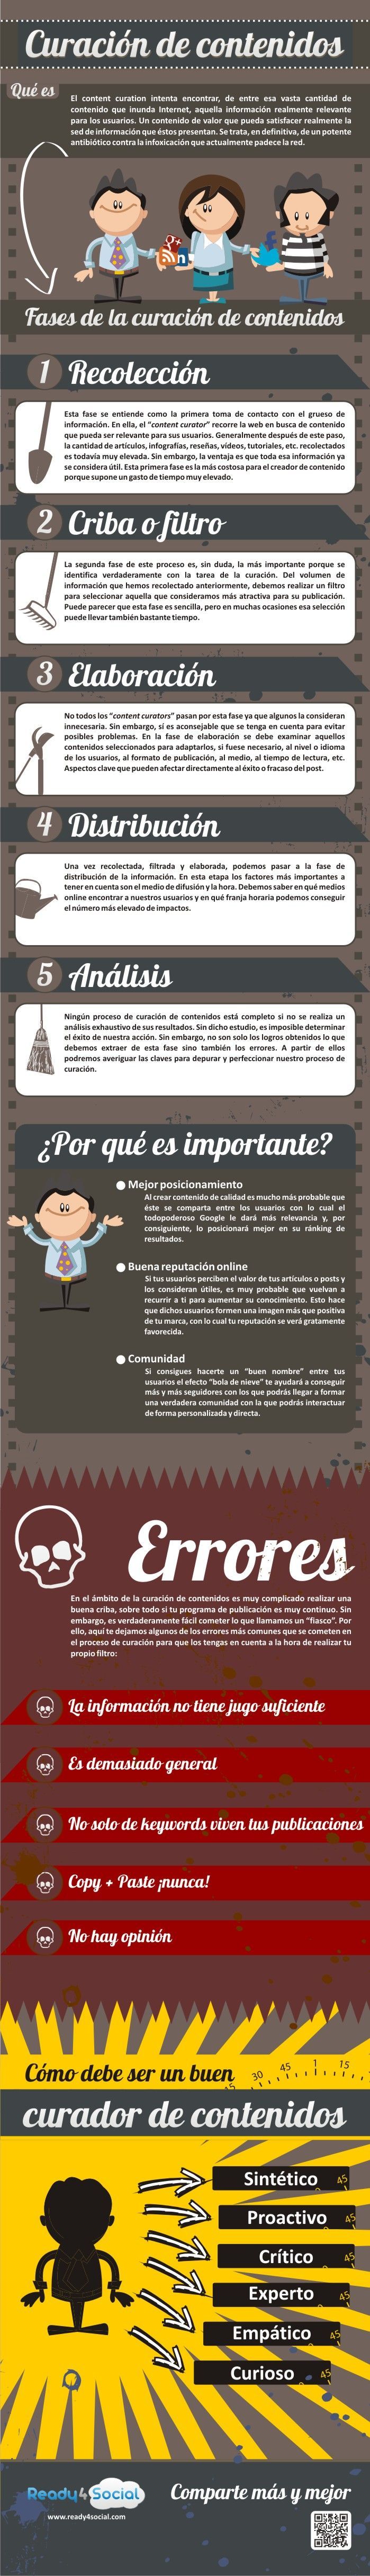 curacion-de-contenido-que-es-importancia-y-fases-infografia-en-espanol